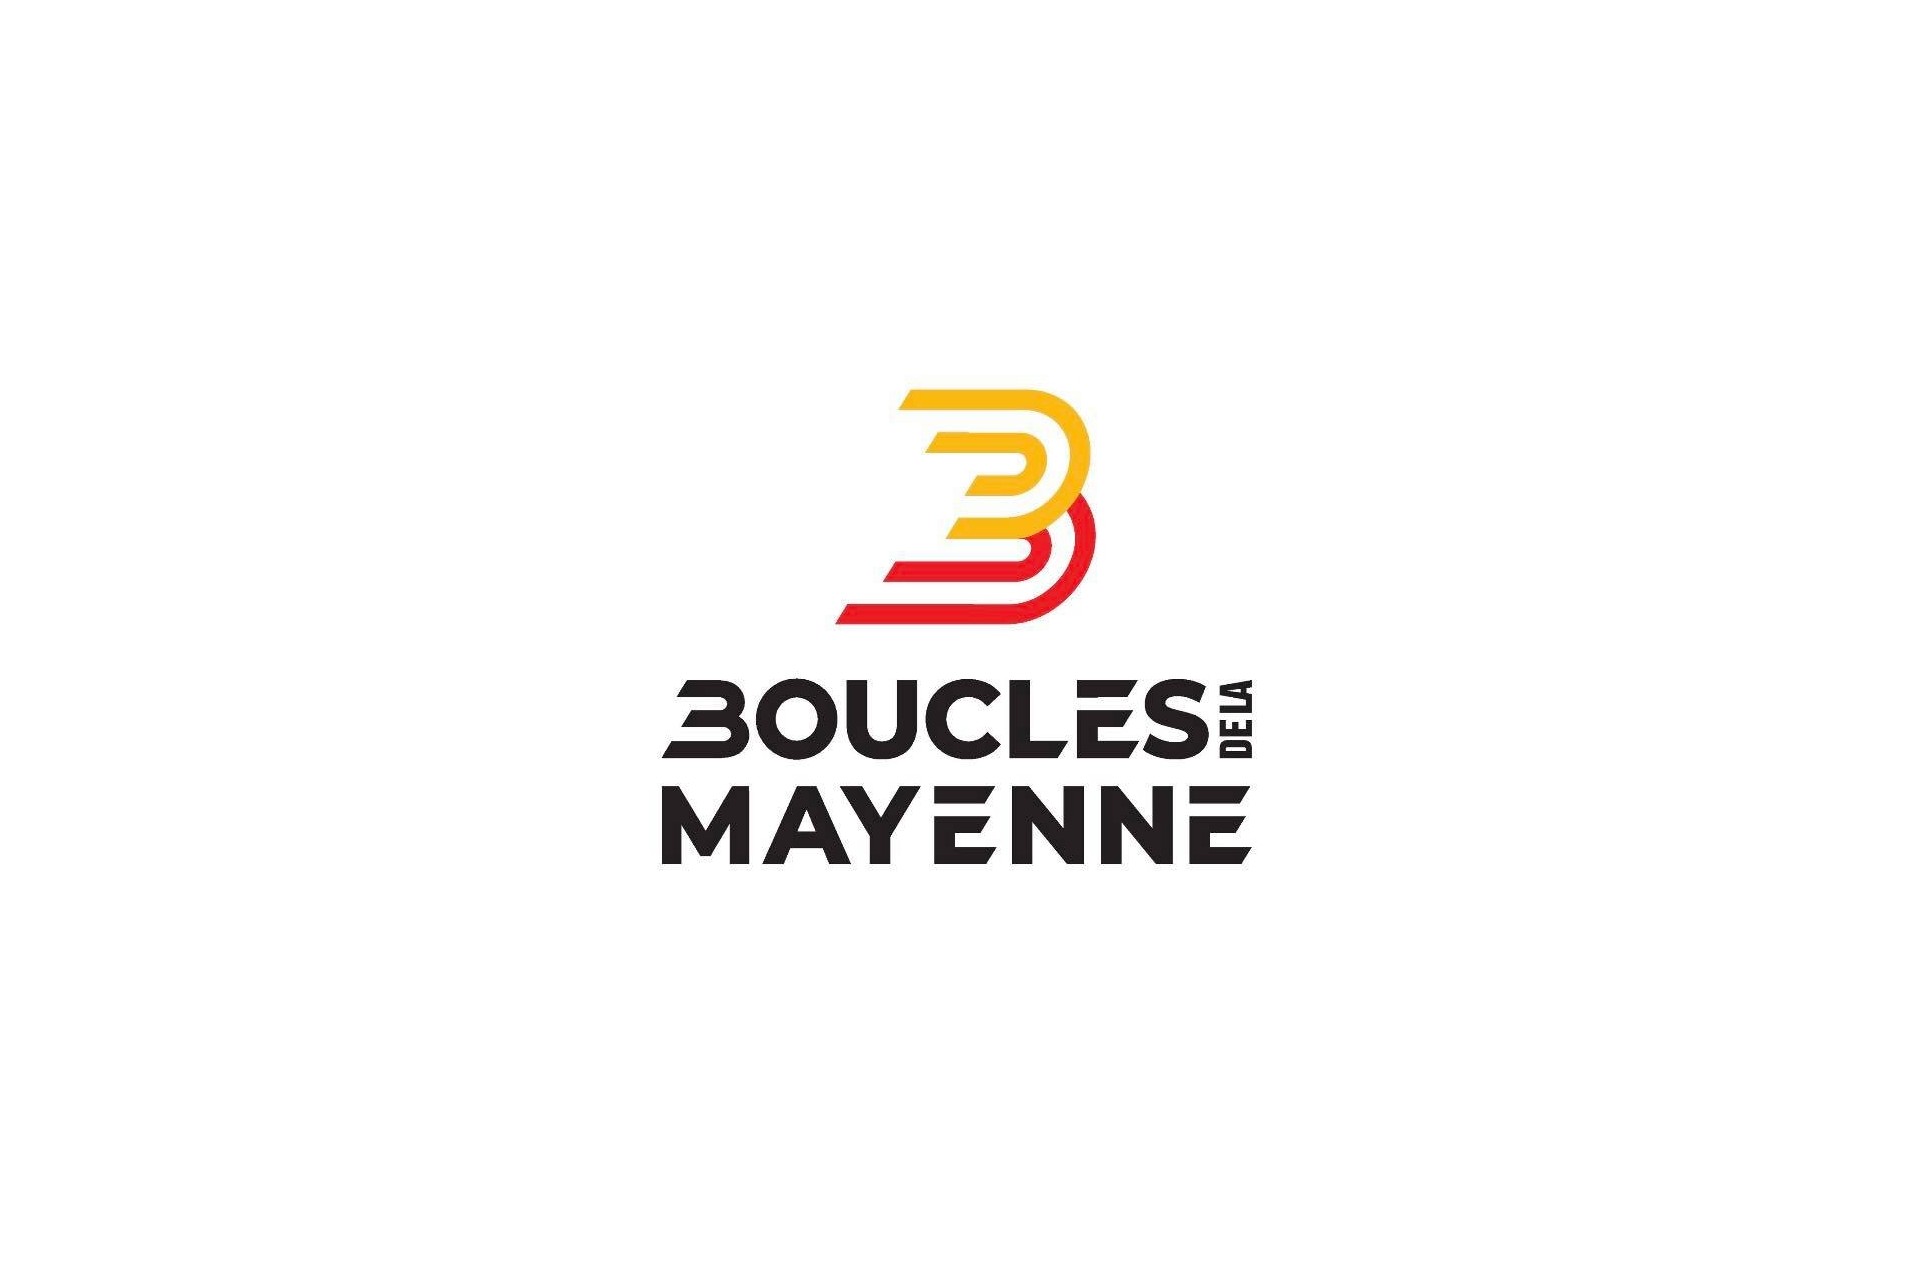 Boucles de la Mayenne 2021: etap 2. Arnaud Demare na swoim miejscu